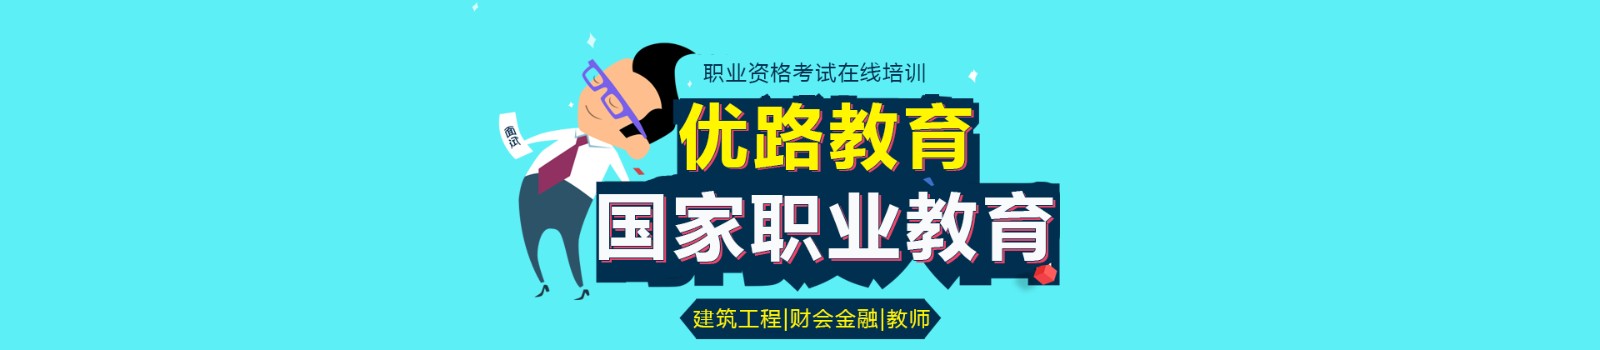 扬州优路教育 横幅广告